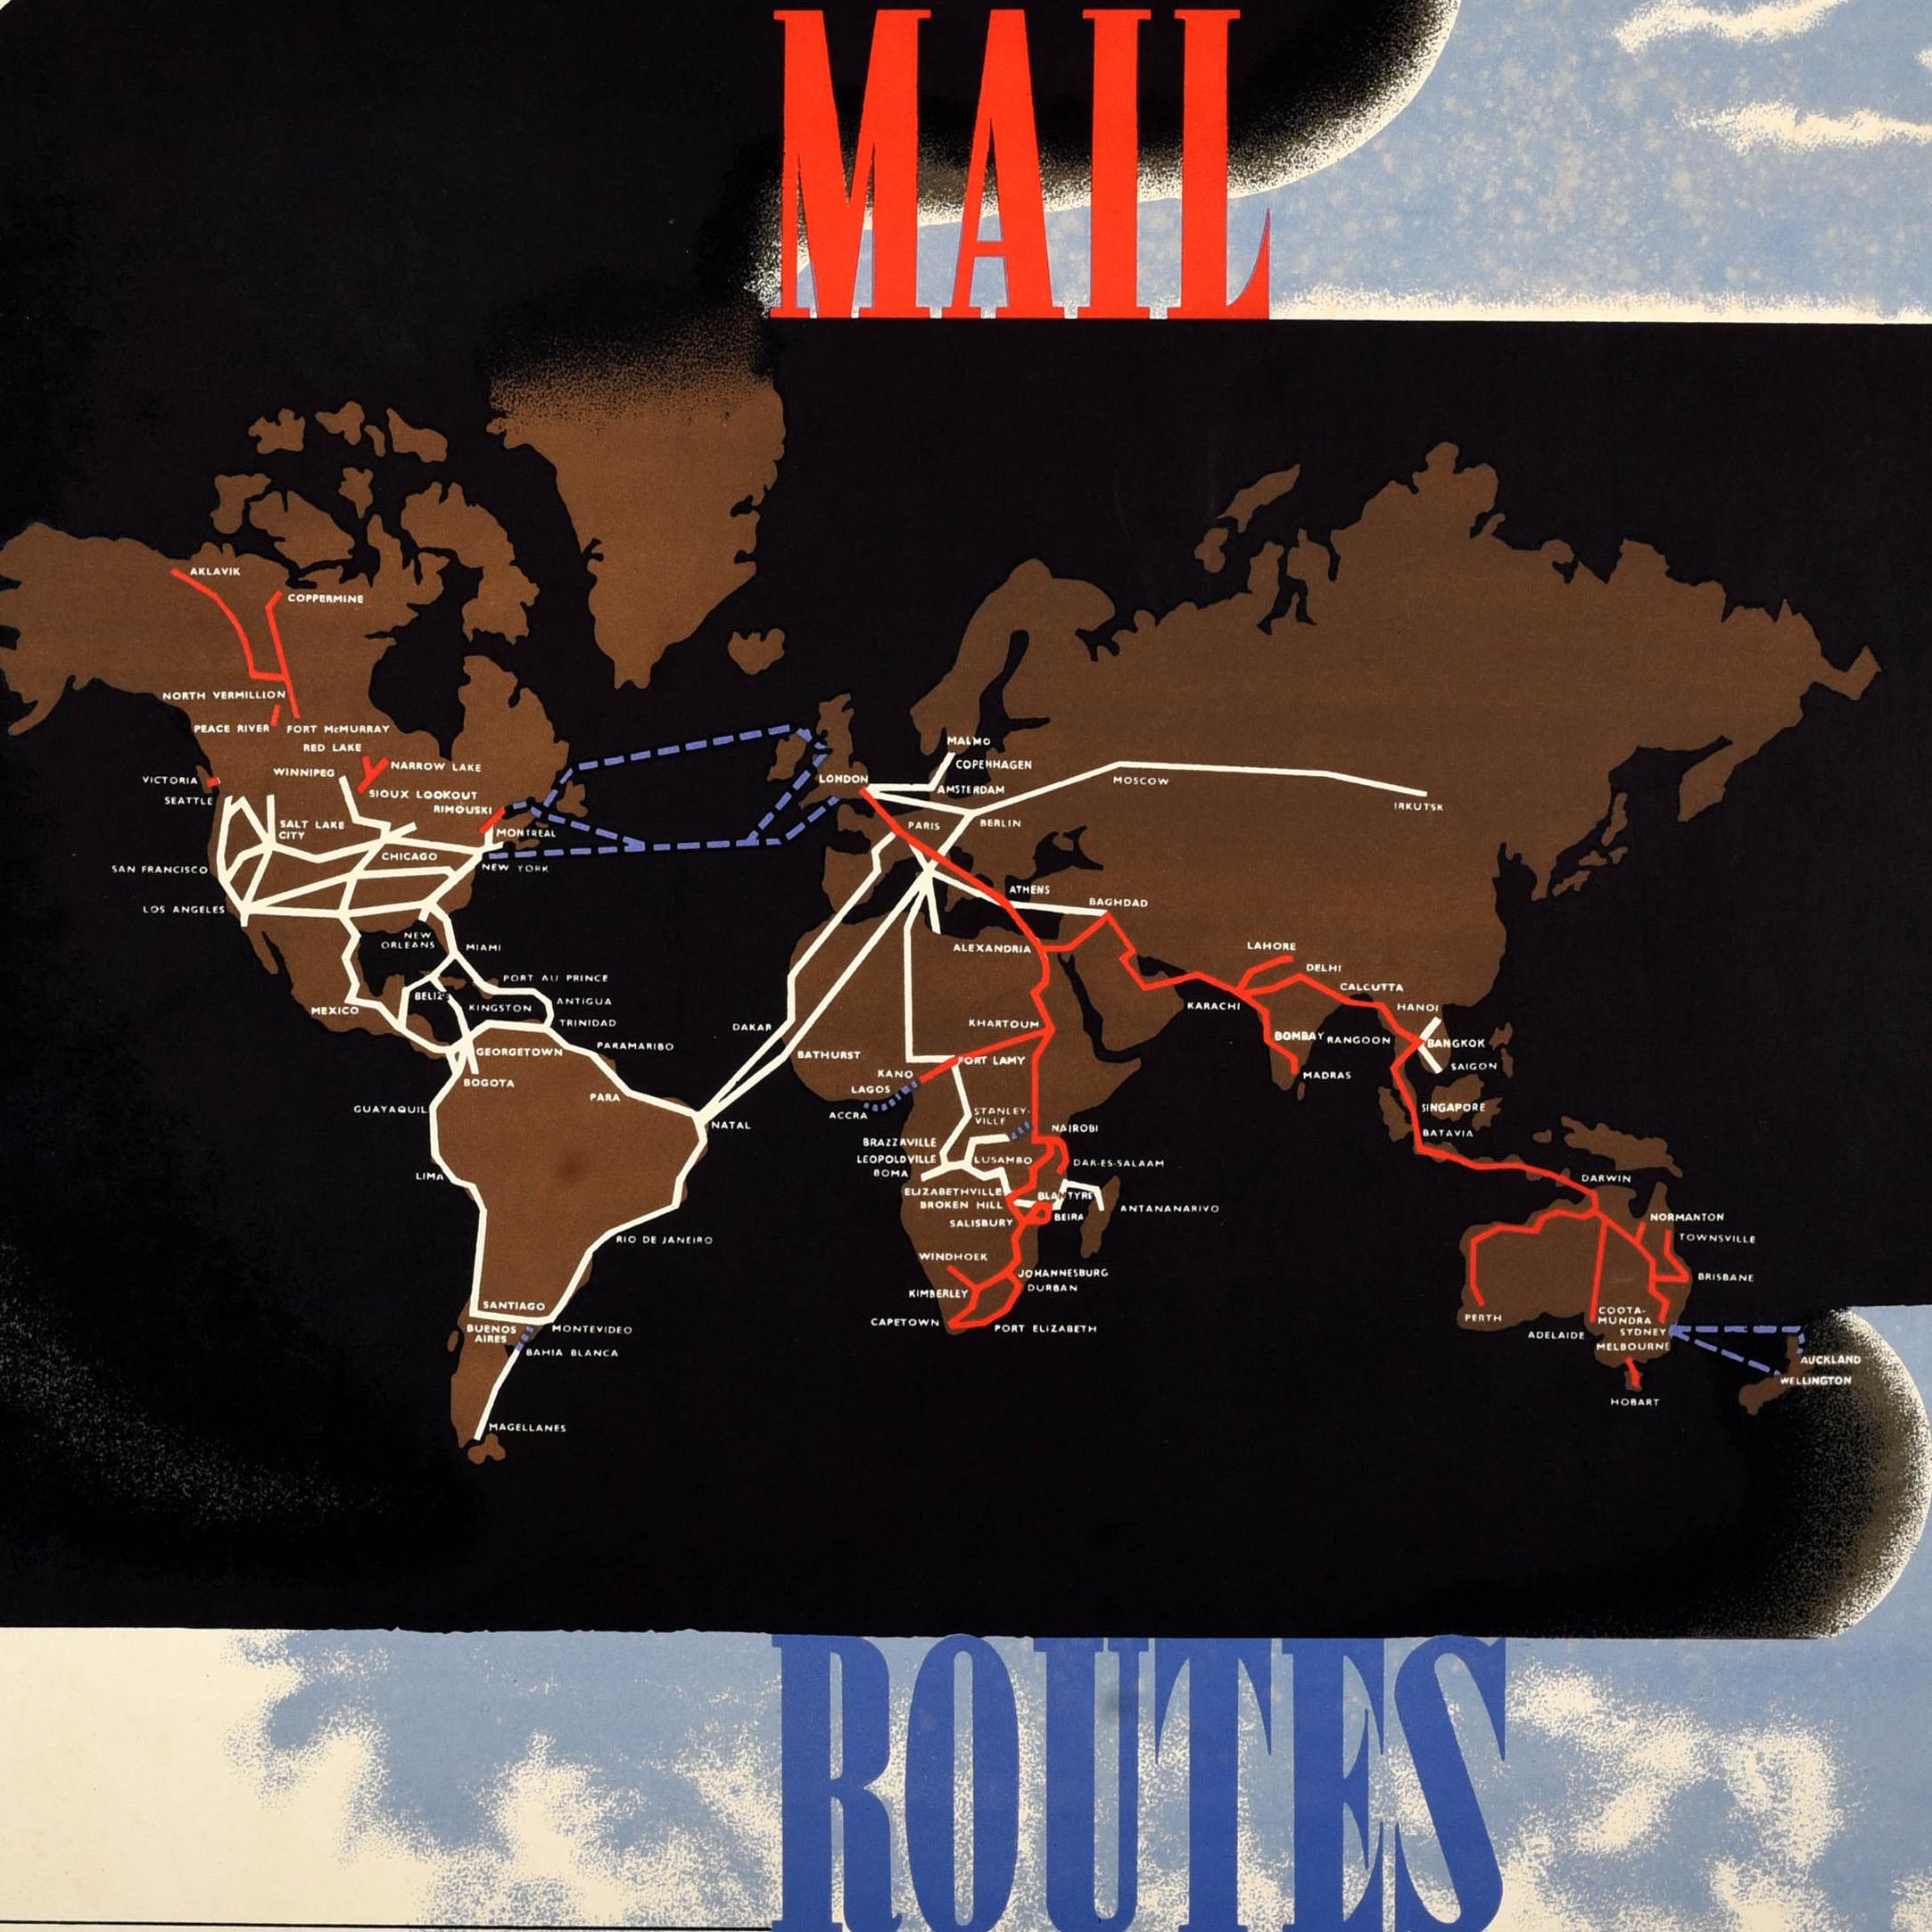 Rare affiche publicitaire originale pour le General Post Office (GPO) - Air Mail Routes - présentant un superbe dessin de l'artiste Edward McKnight Kauffer (1890-1954) montrant les routes aériennes mondiales en rouge, blanc et bleu reliant des